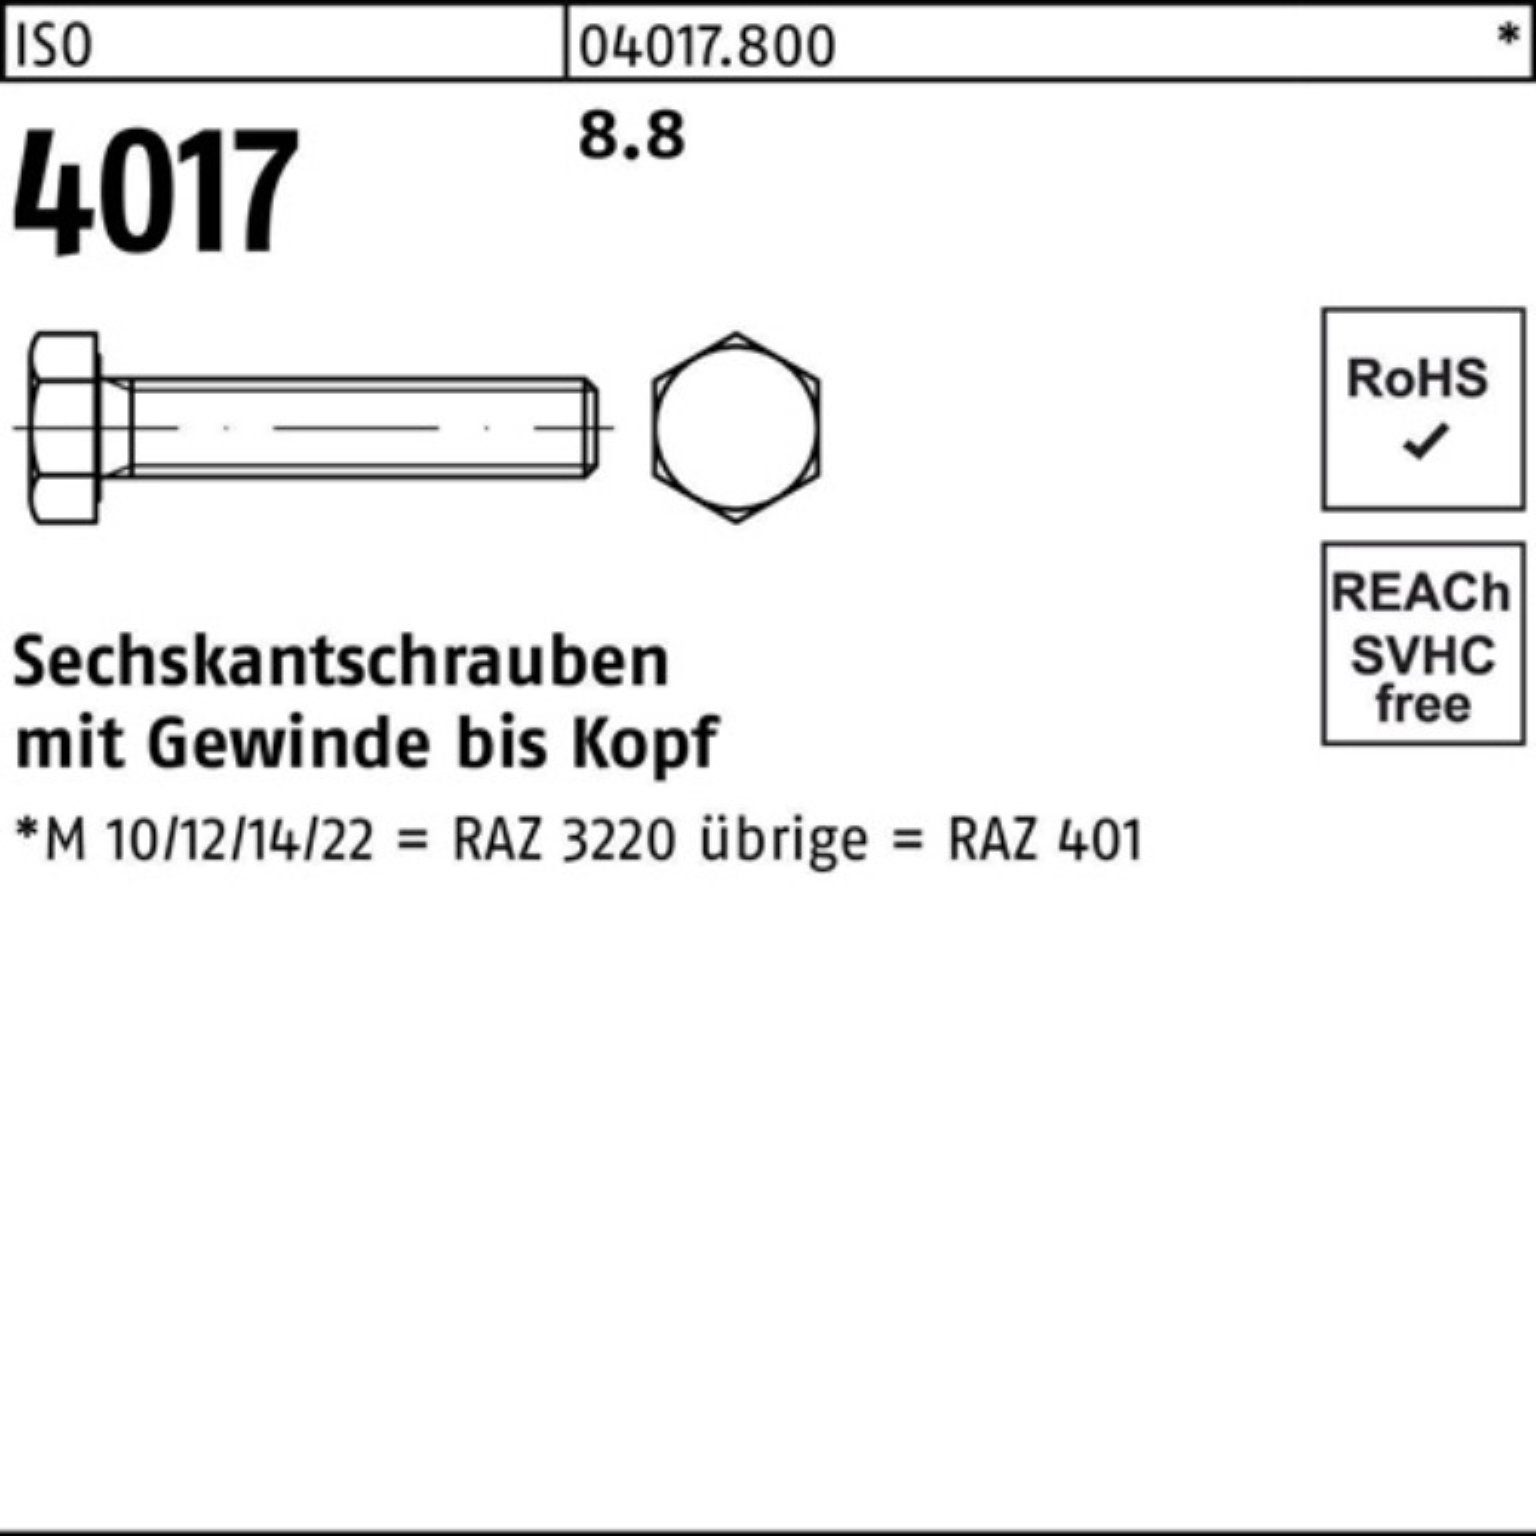 100er ISO ISO Sechskantschraube 60 4017 M42x VG Bufab Sechskantschraube Pack Stück 1 8.8 4017